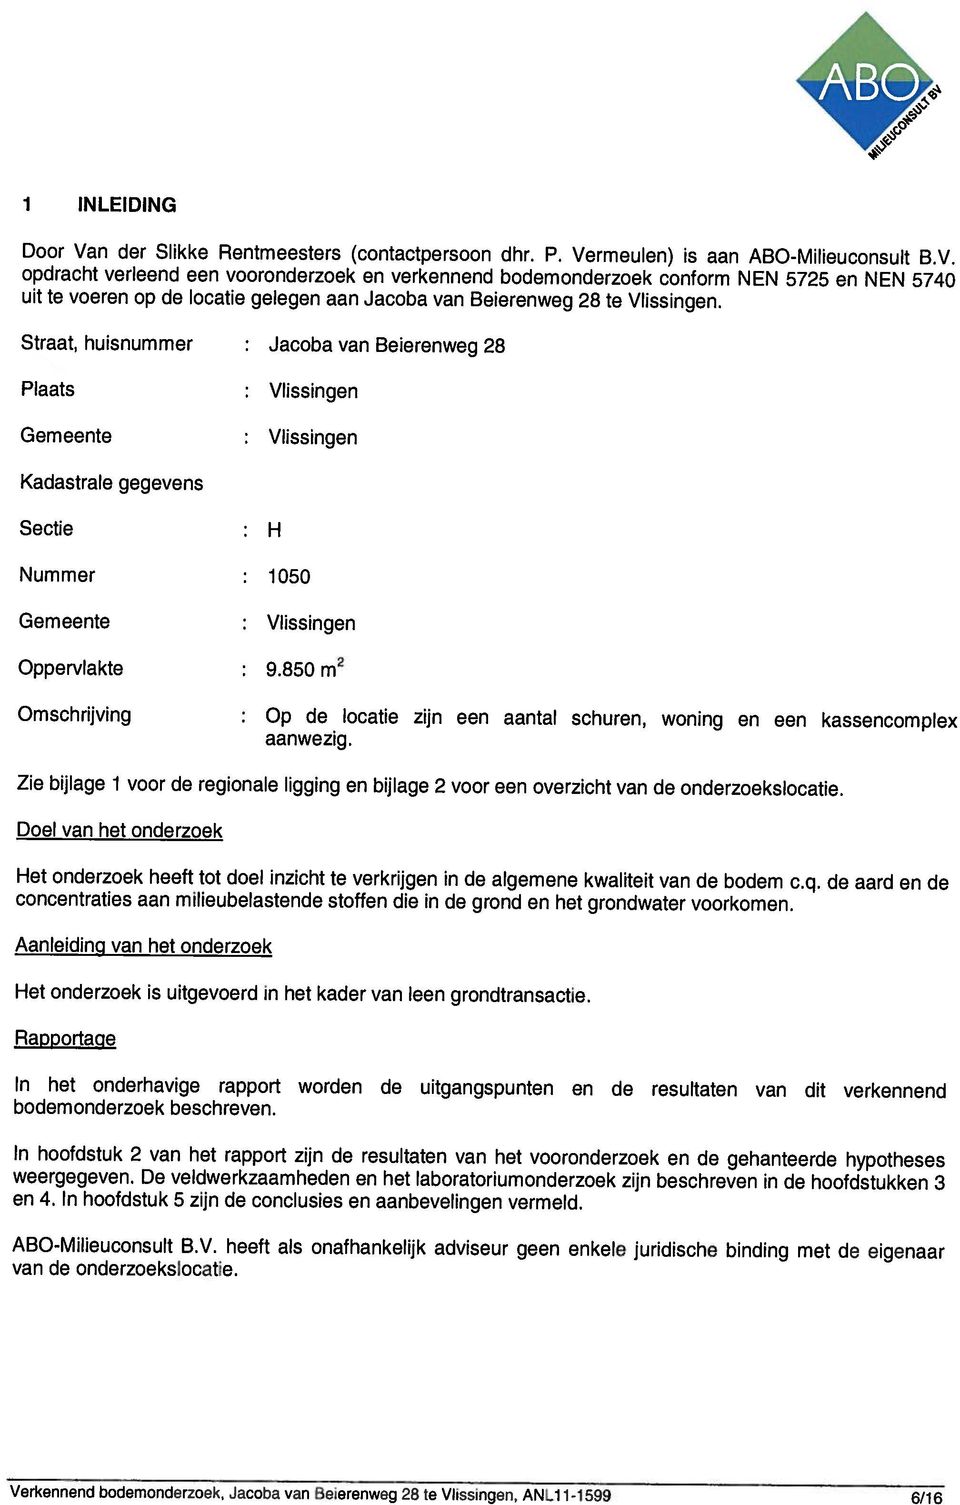 Verkennend bodemonderzoek, Jacoba van Beierenweg 28 te Vlissingen, ANL111599 6/16 ABOMilieuconsult B.V. heeft als onafhankelijk adviseur geen enkele juridische binding met de eigenaar van de onderzoekslocatie.